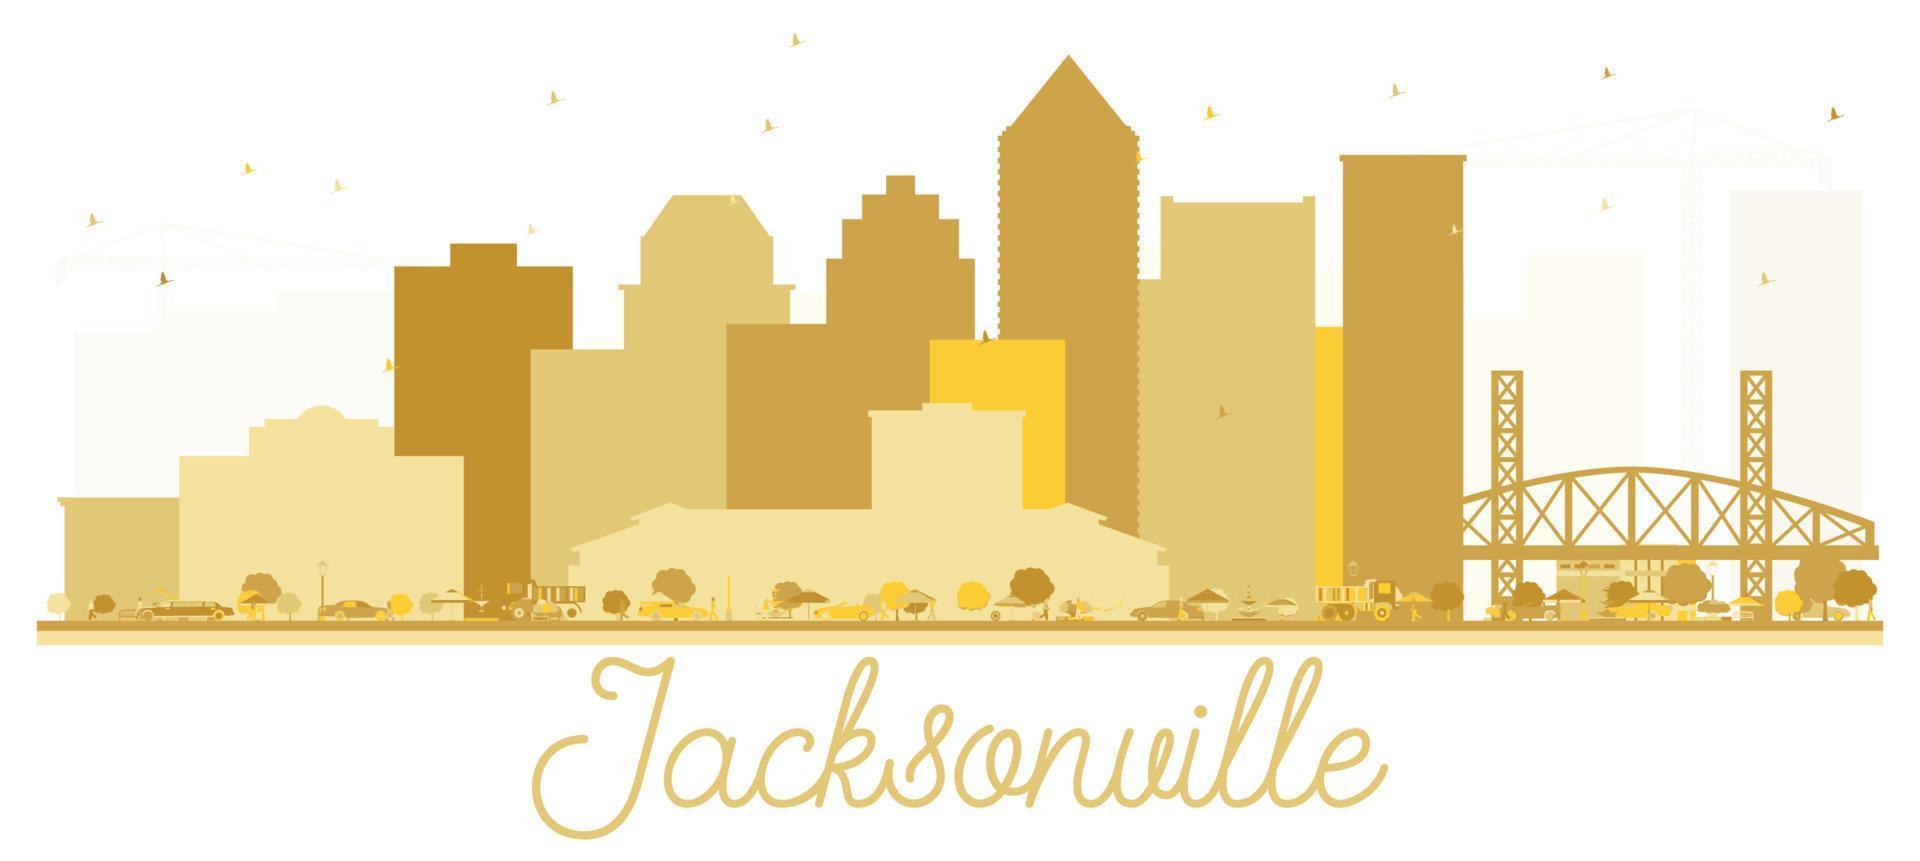 silueta dorada del horizonte de la ciudad de Jacksonville, Florida, Estados Unidos. vector